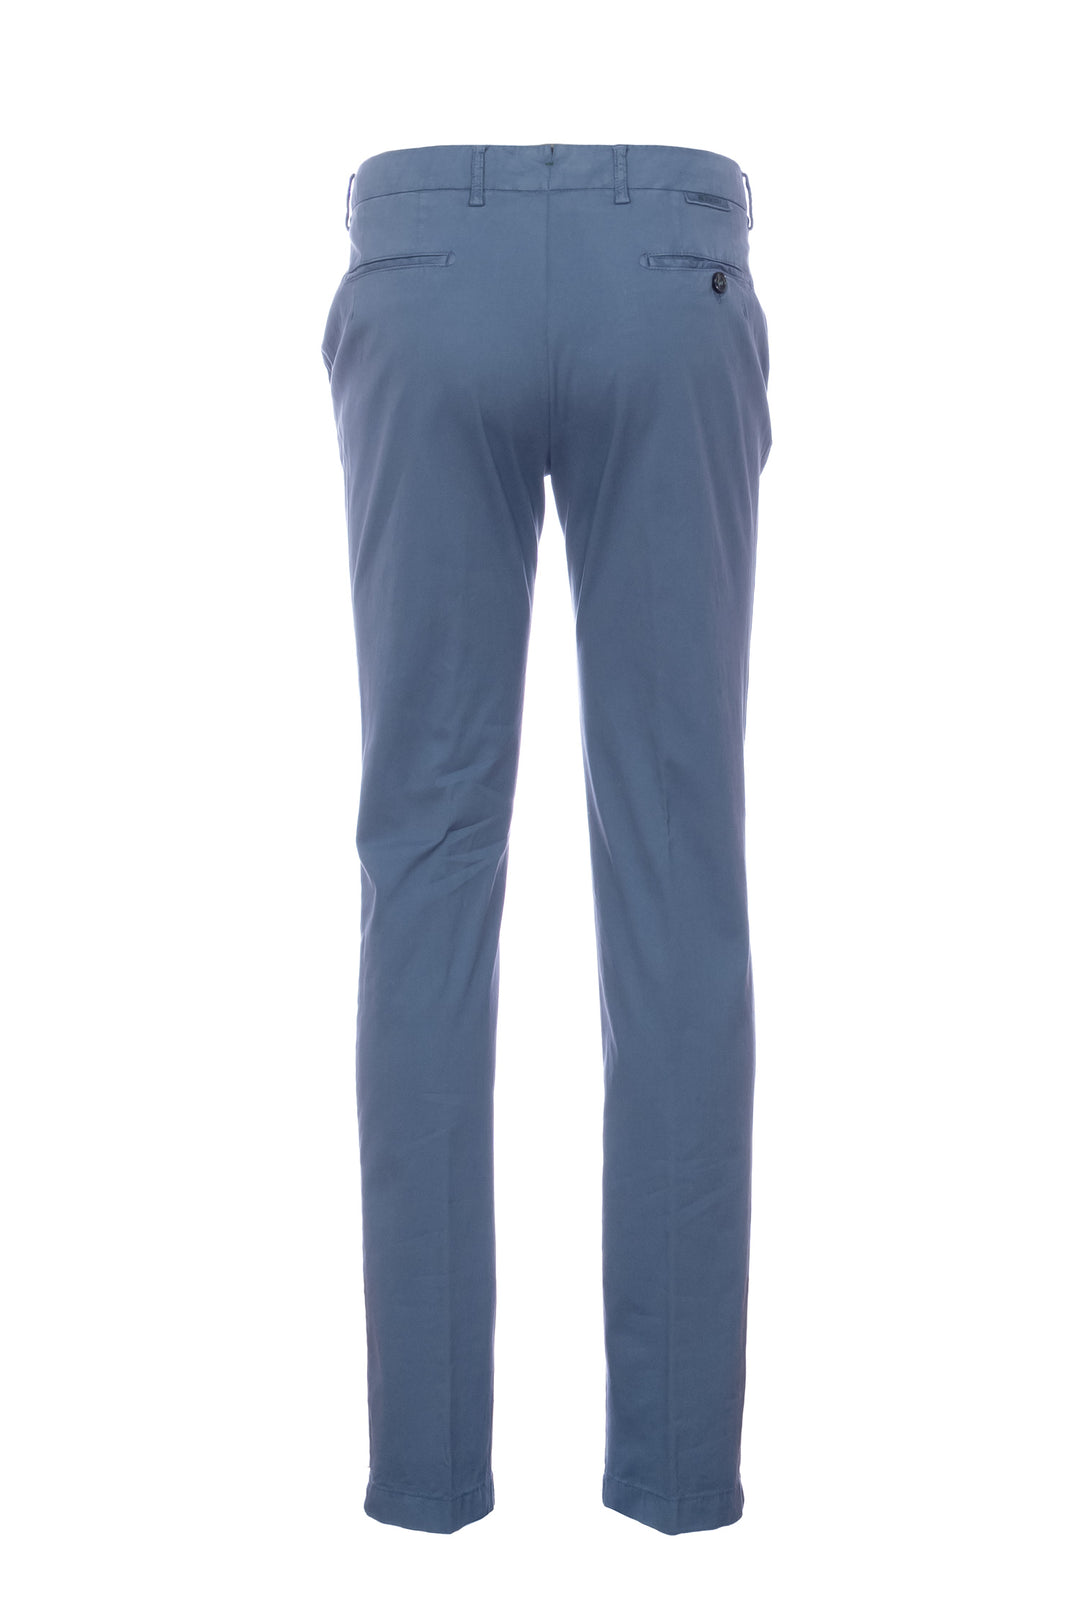 BERWICH Pantalone “MORELLO” blu in misto cotone elasticizzato e seta - Mancinelli 1954